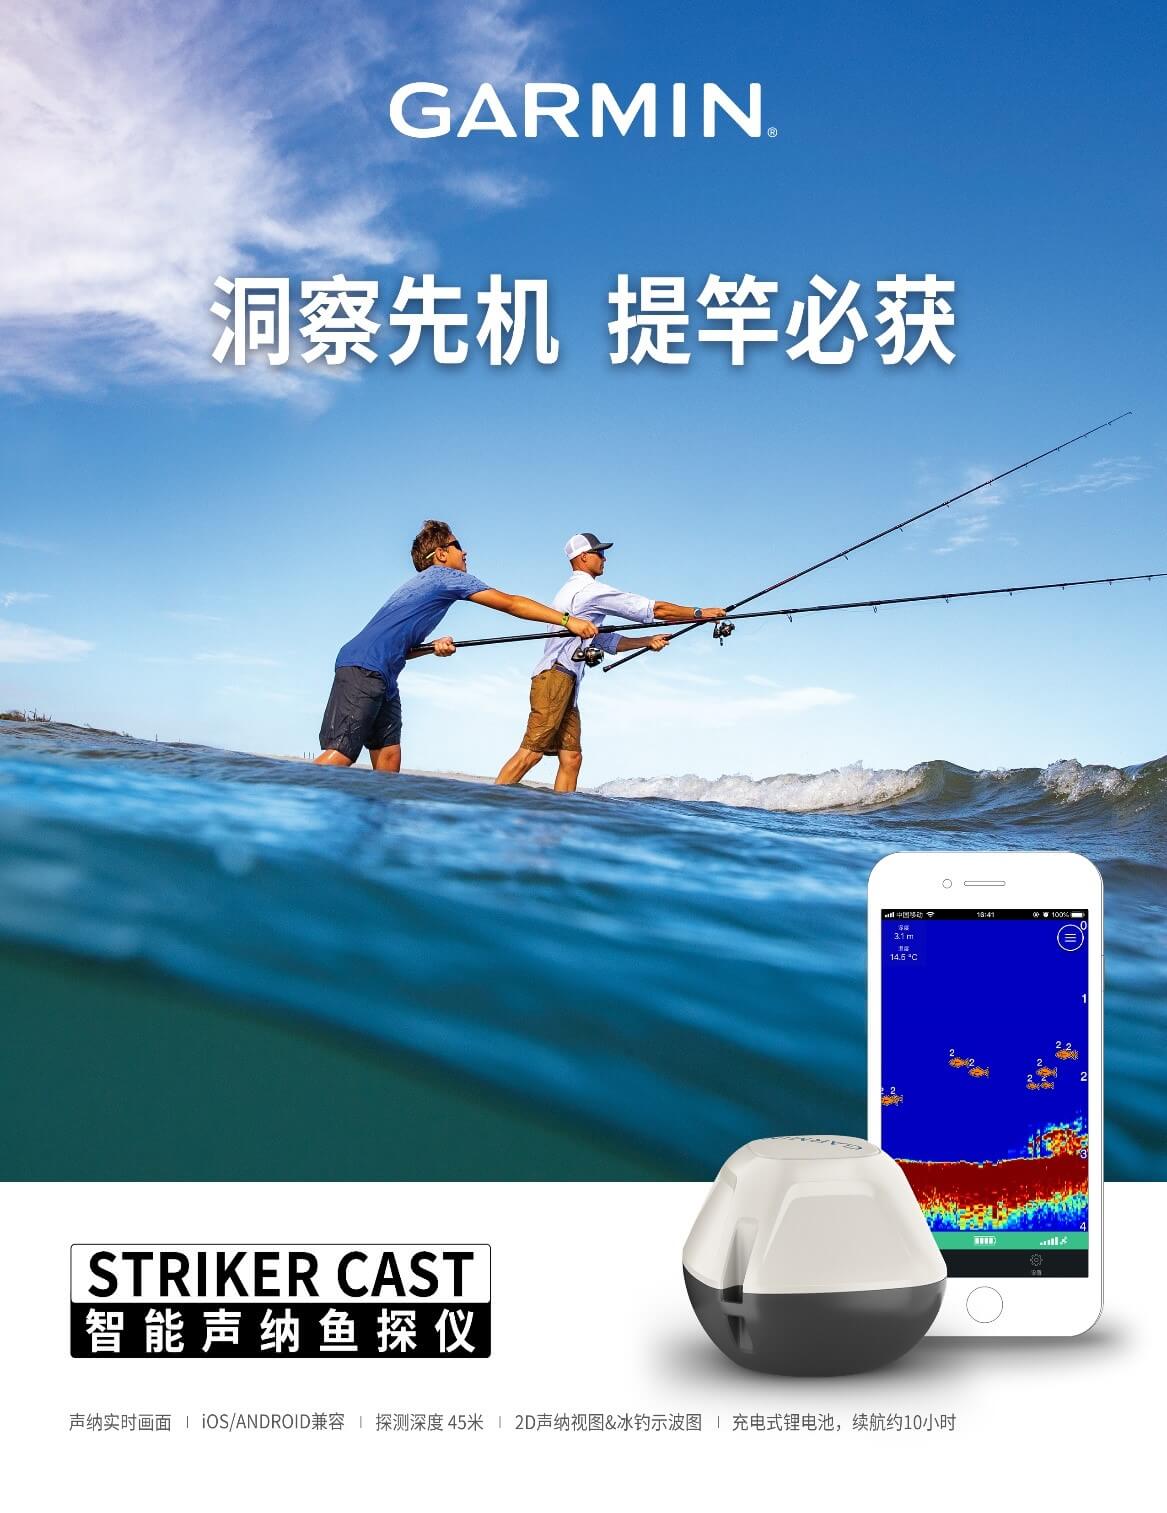 STRIKER Cast 便携式探鱼器